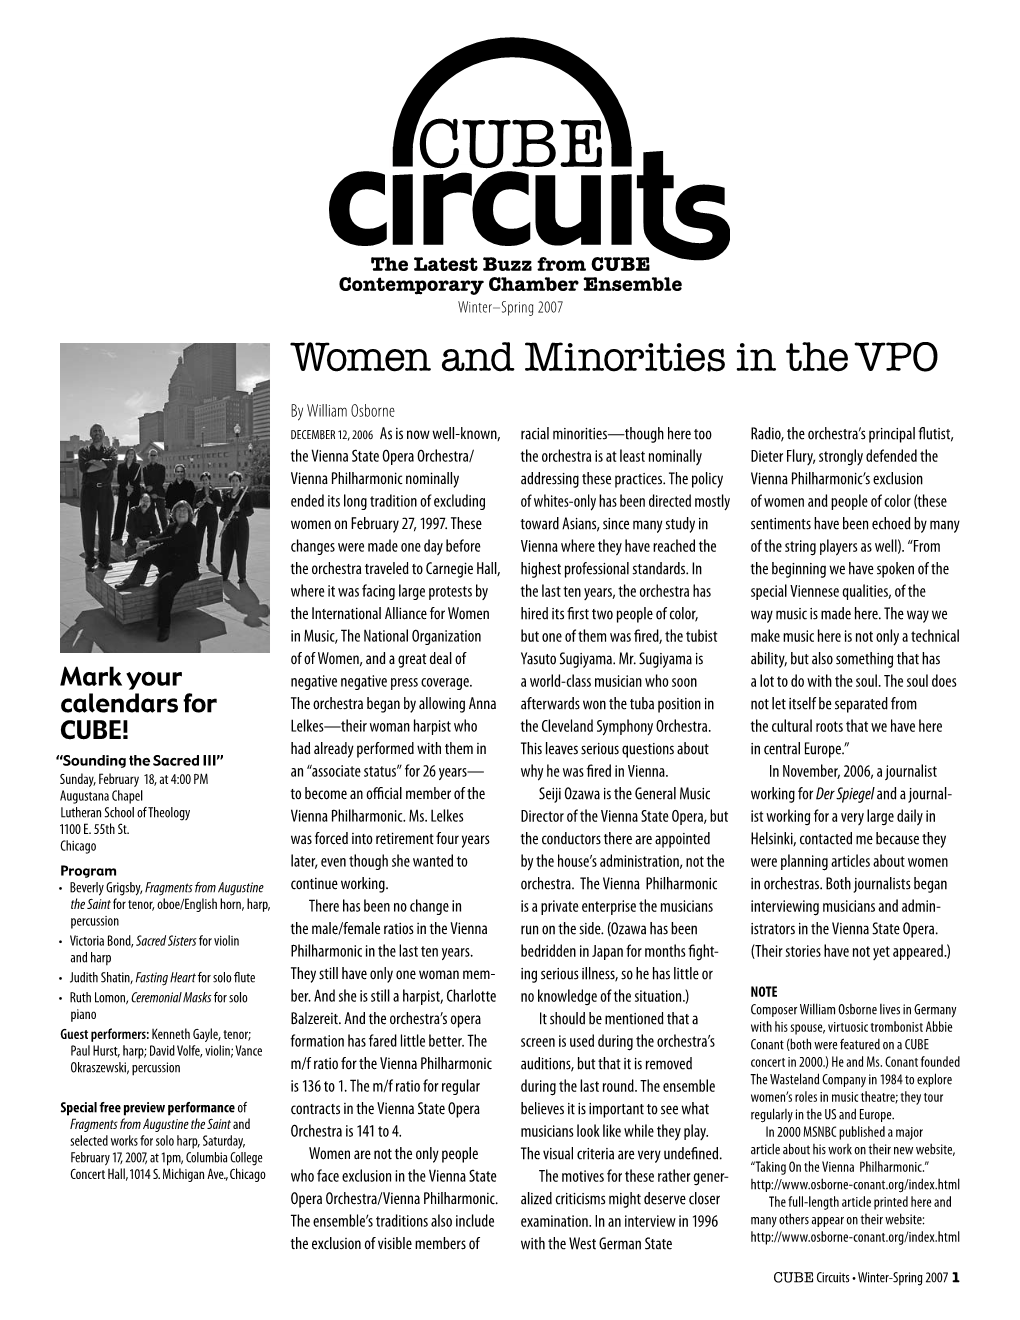 Women and Minorities in the VPO